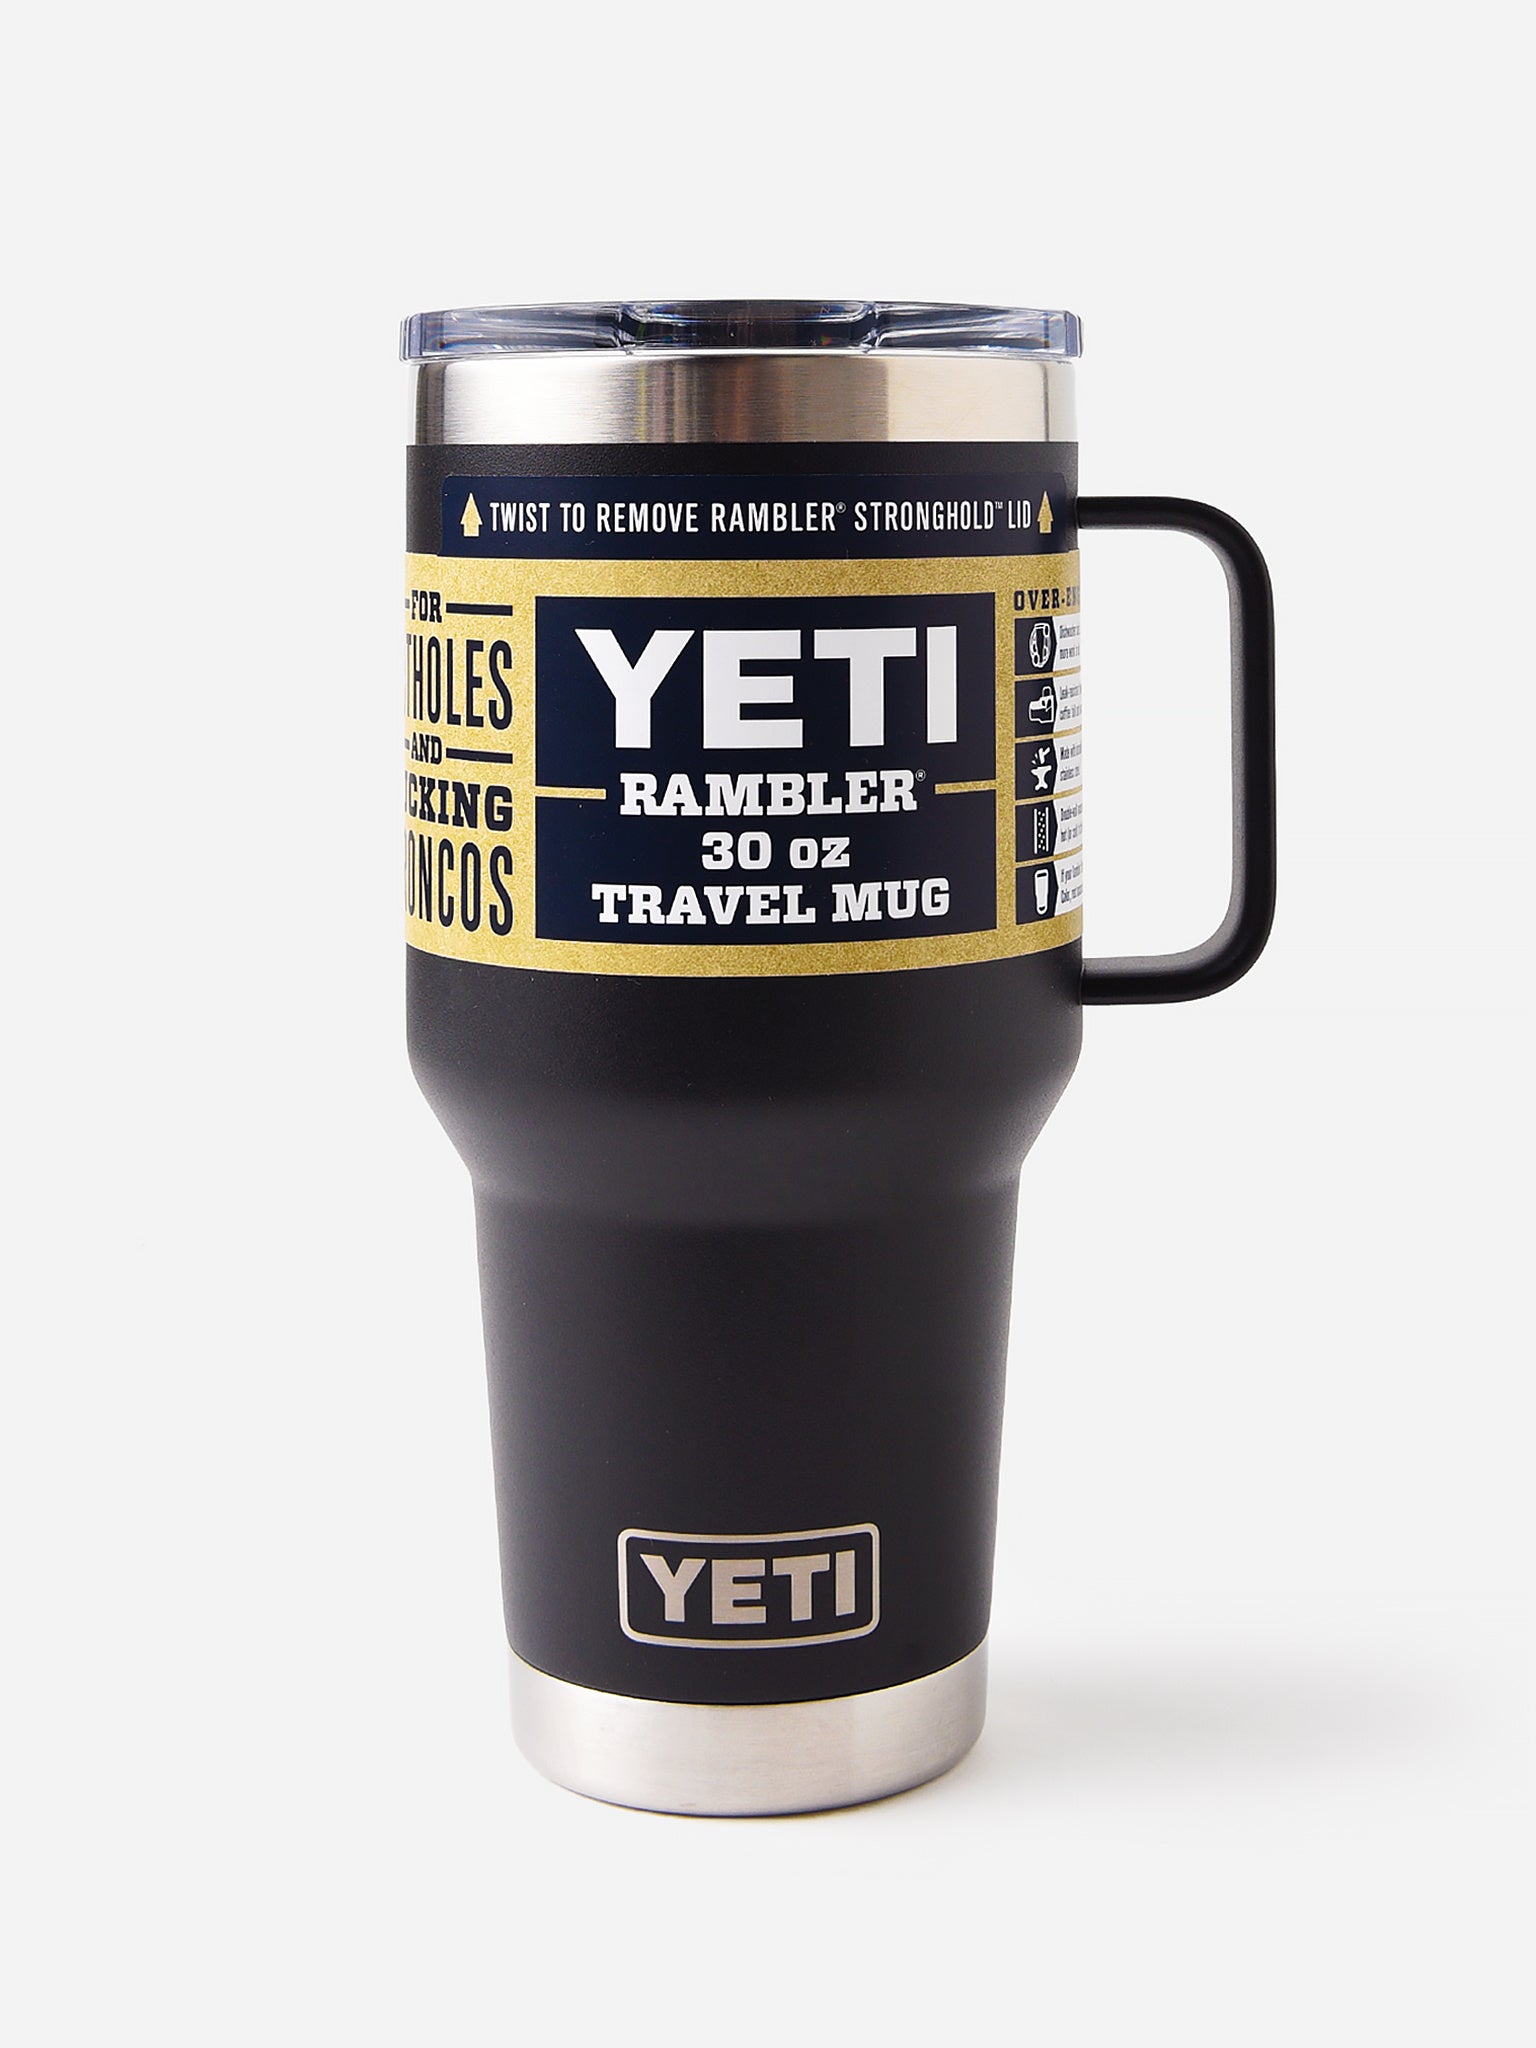 YETI 20 oz. Rambler Travel Mug with Stronghold Lid